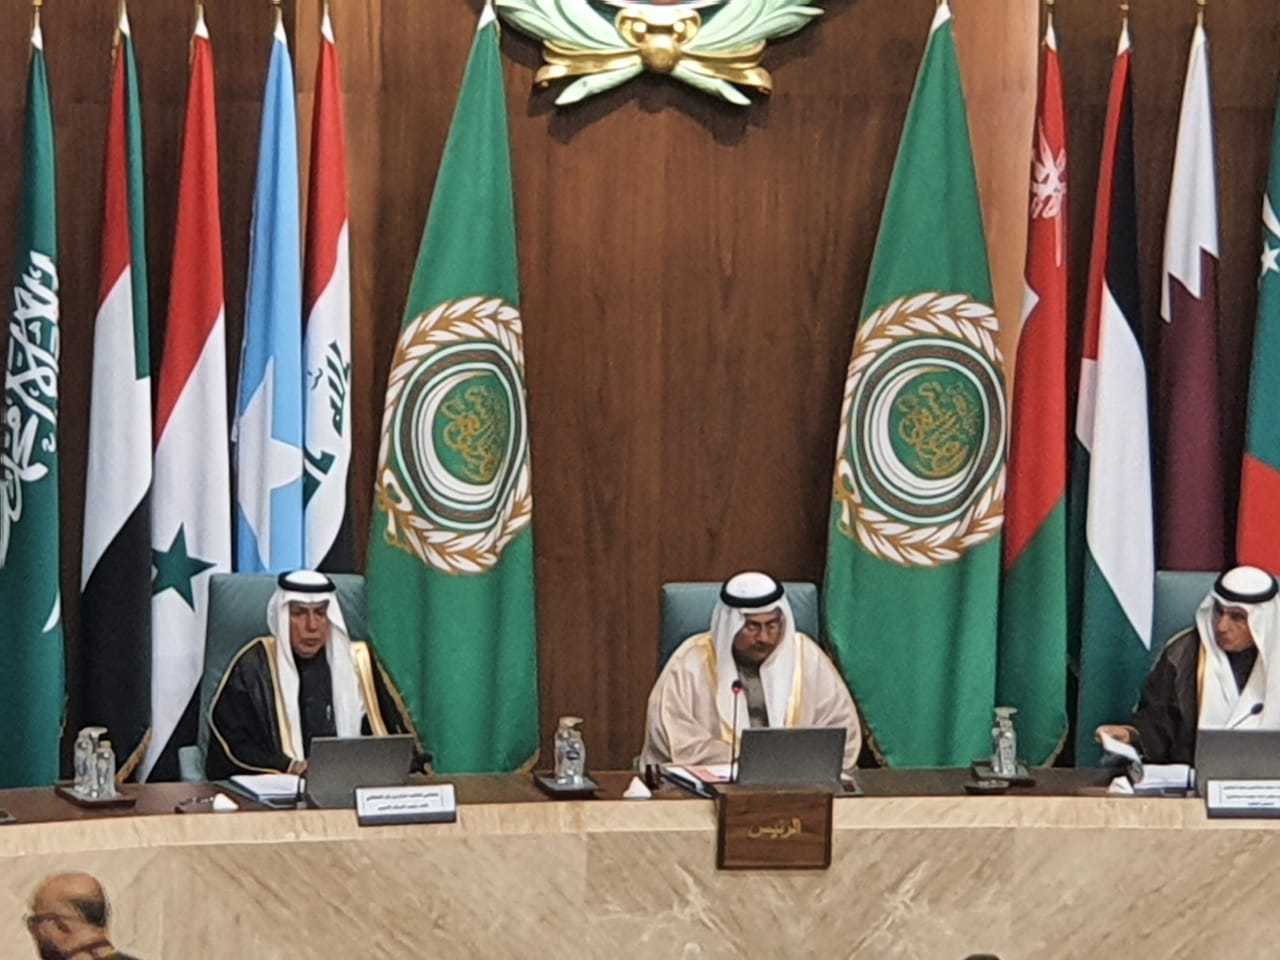 البرلمان العربي يدعو إلى حشد رد فعل دولي ضد مواقف "نتنياهو" الرافضة لحل الدولتين